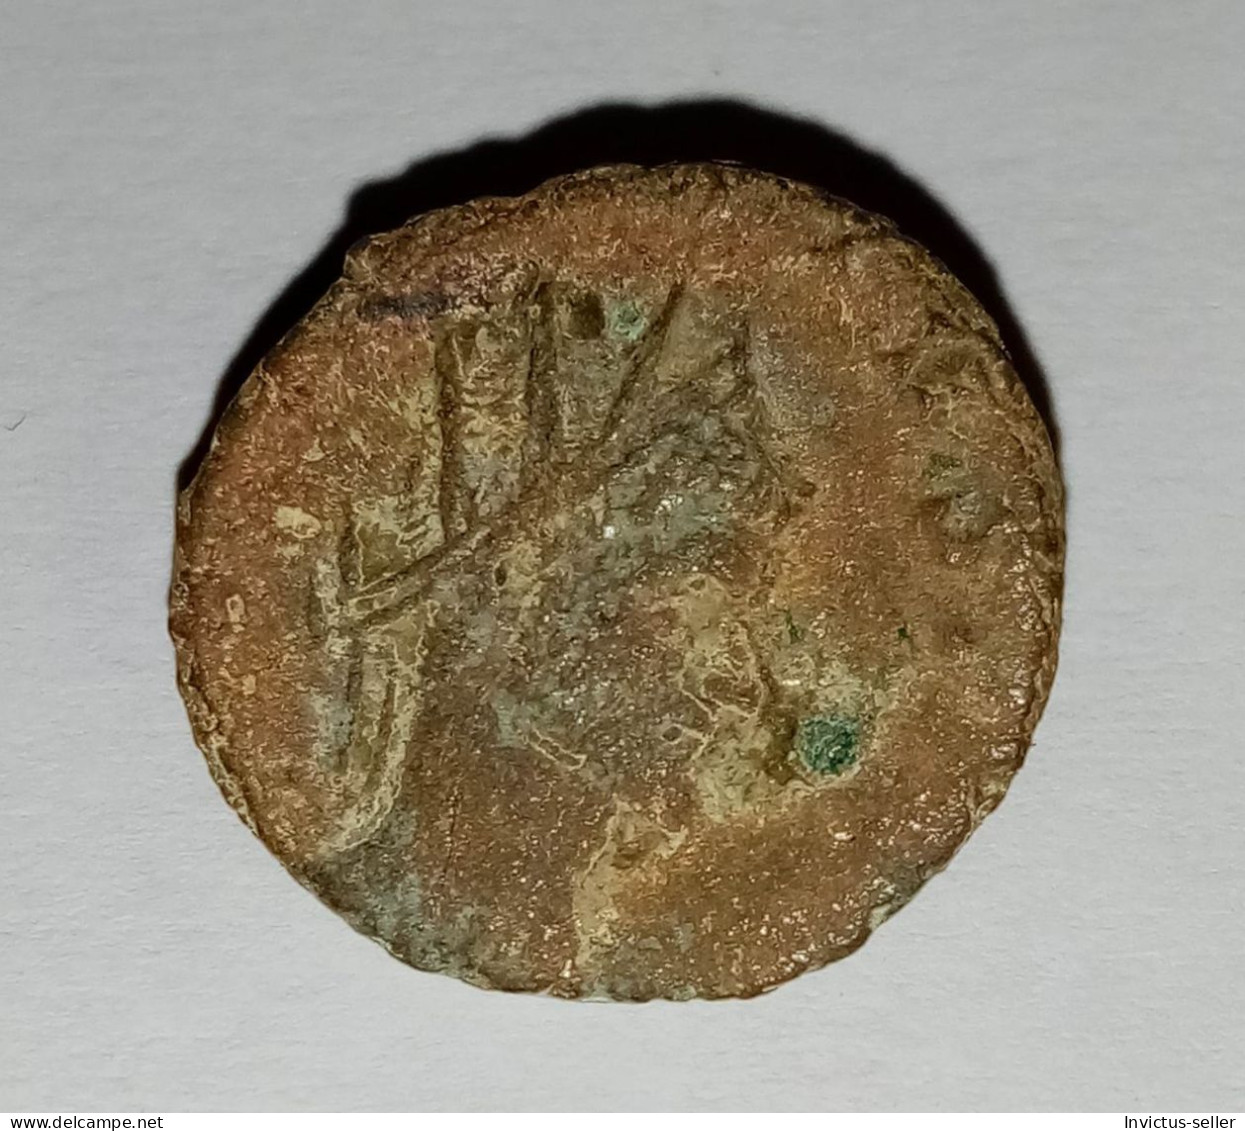 Moneta Romana Imperatore Marcus Aurelius Claudius "Gothicus -  ANCIENT ROMAN COIN  - EMPEROR CLAUDIUS GOTHICUS - 268-270 - Colecciones